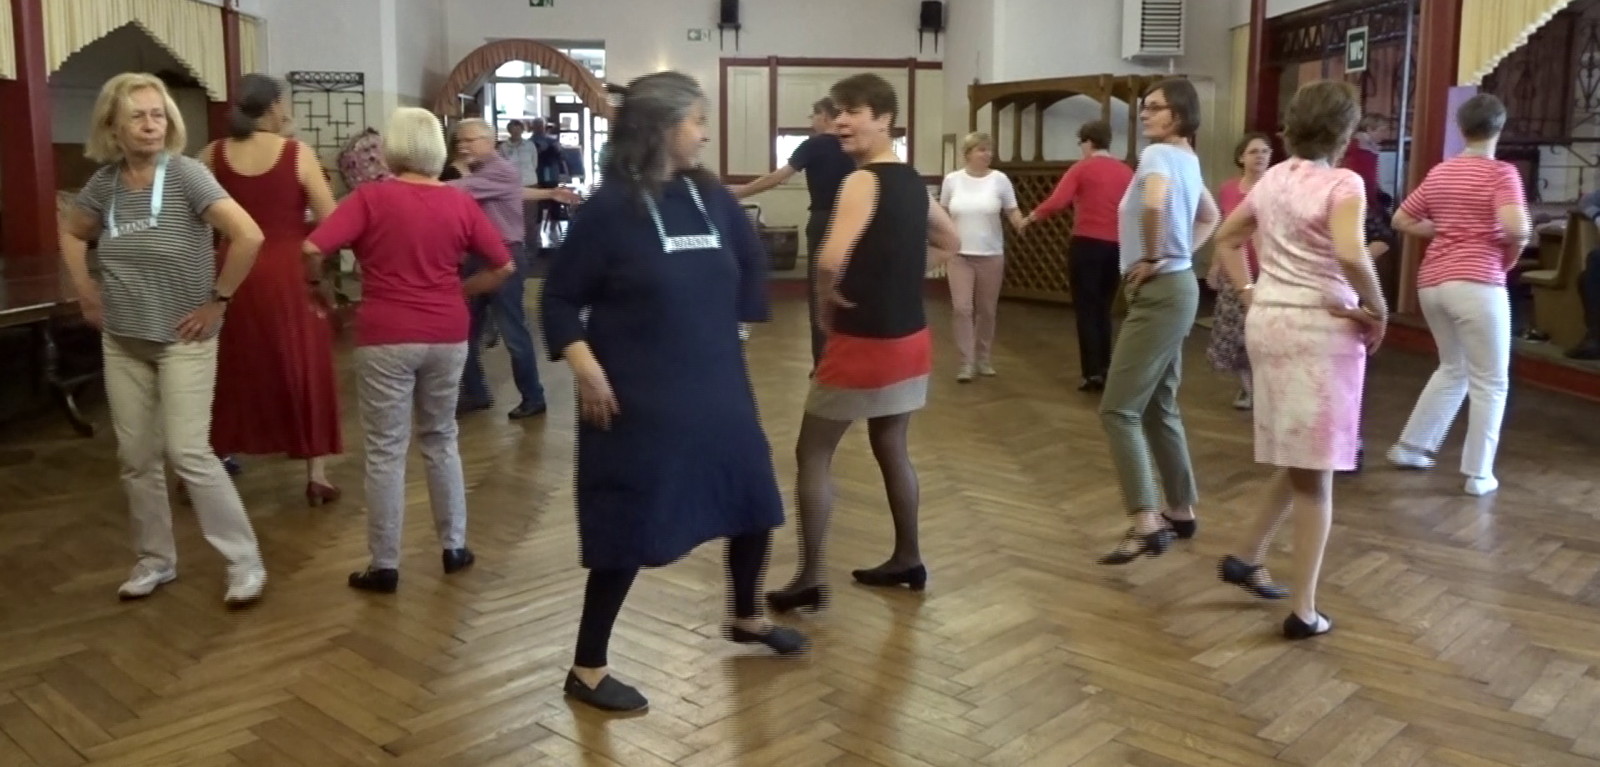 Pasanante, ein Tanz aus der Schweiz